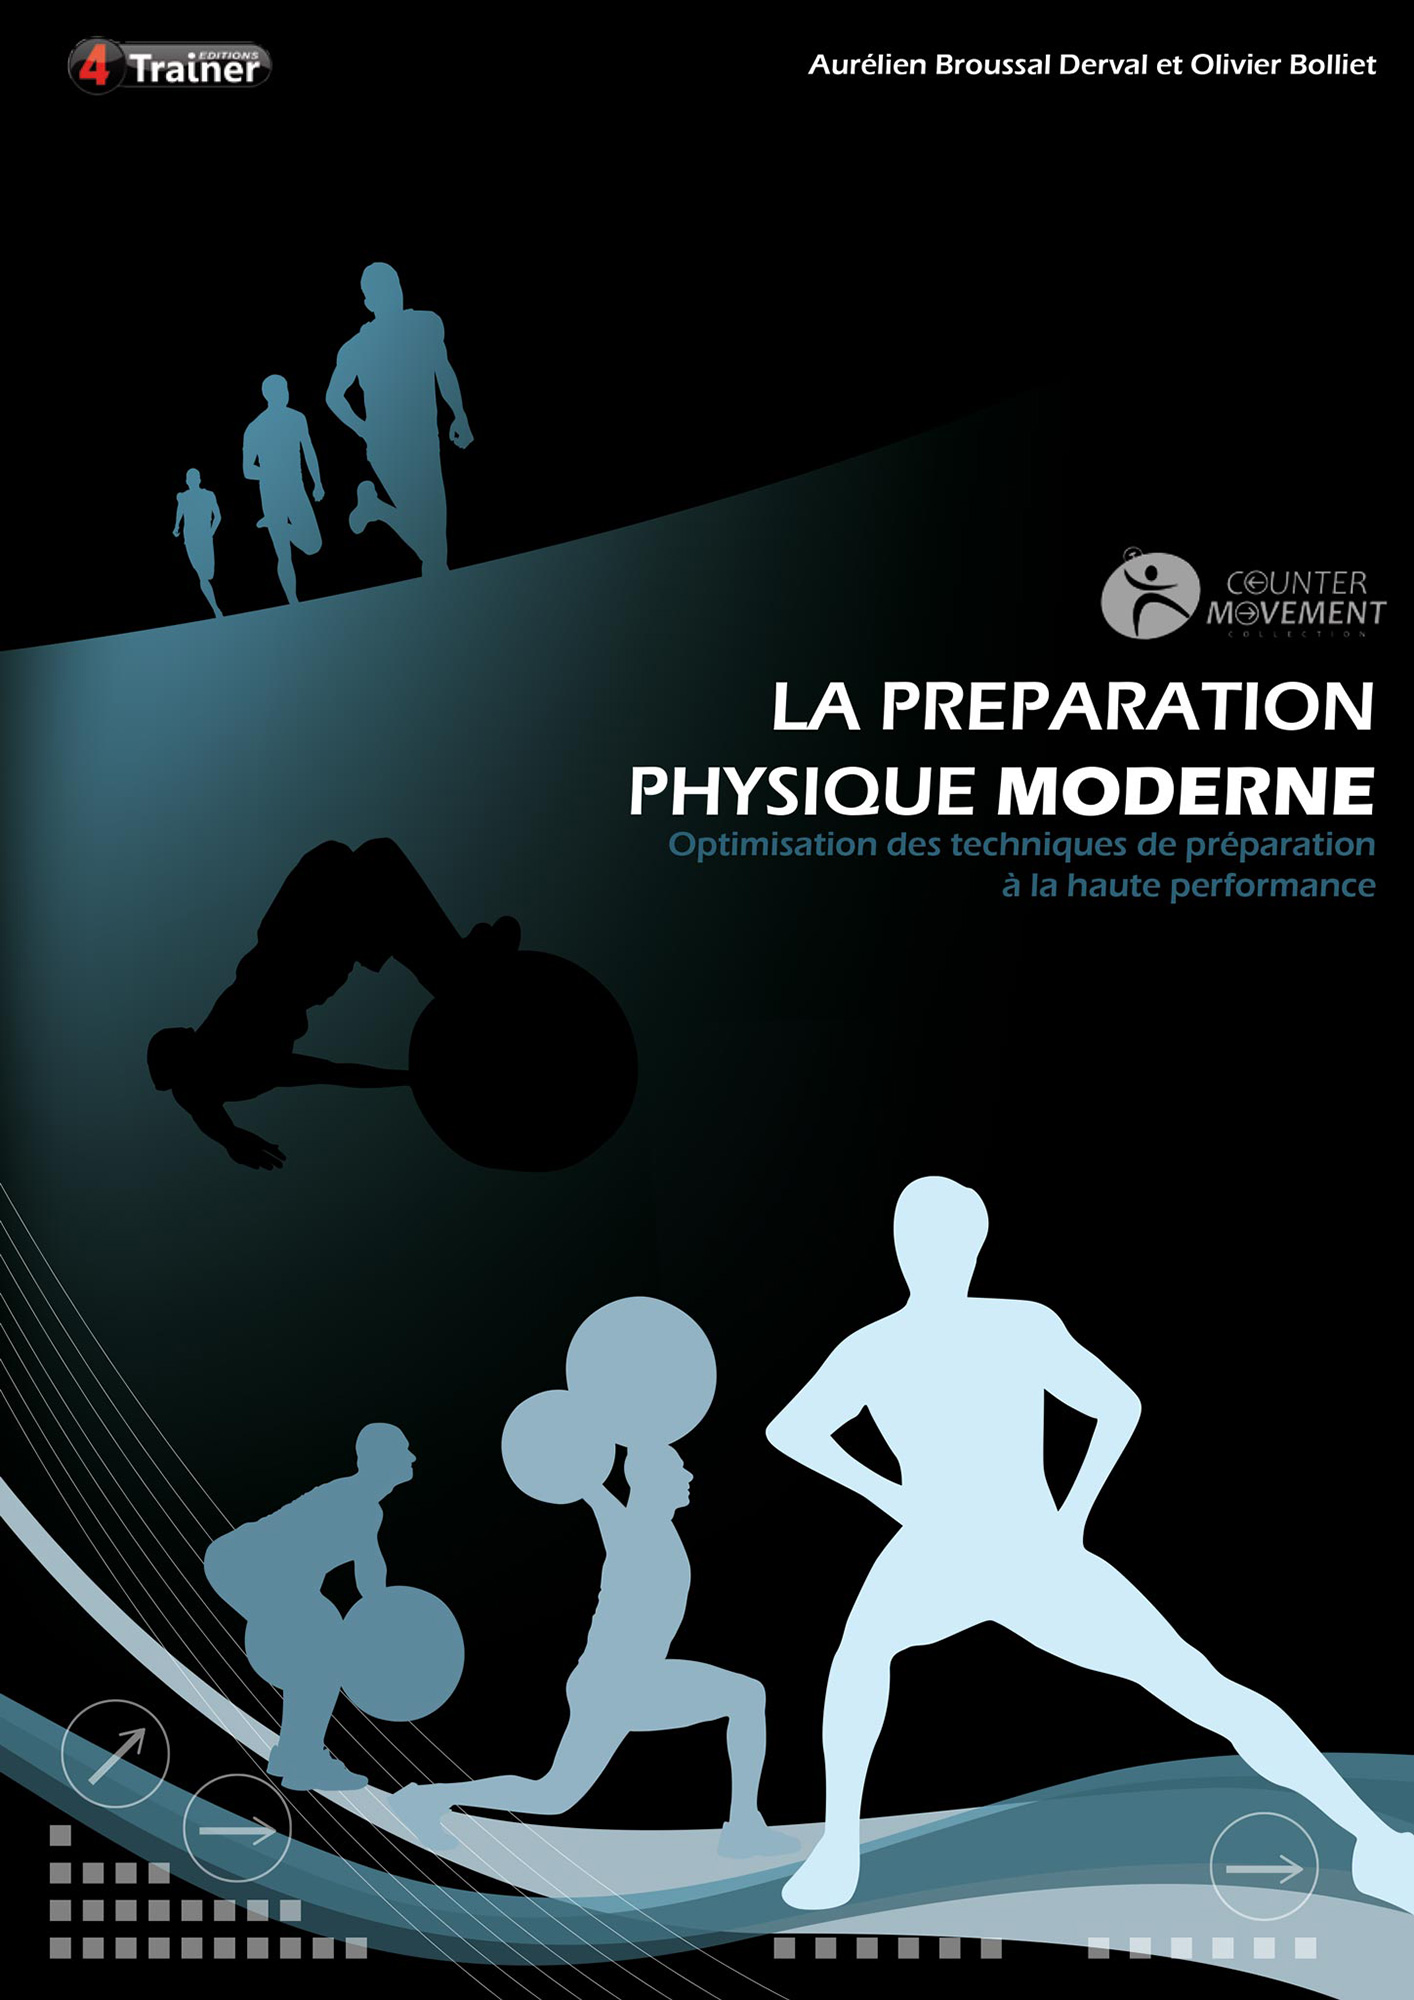 La préparation physique moderne_ livre_ 4 trainer éditions _ anabelle graphiste freelance